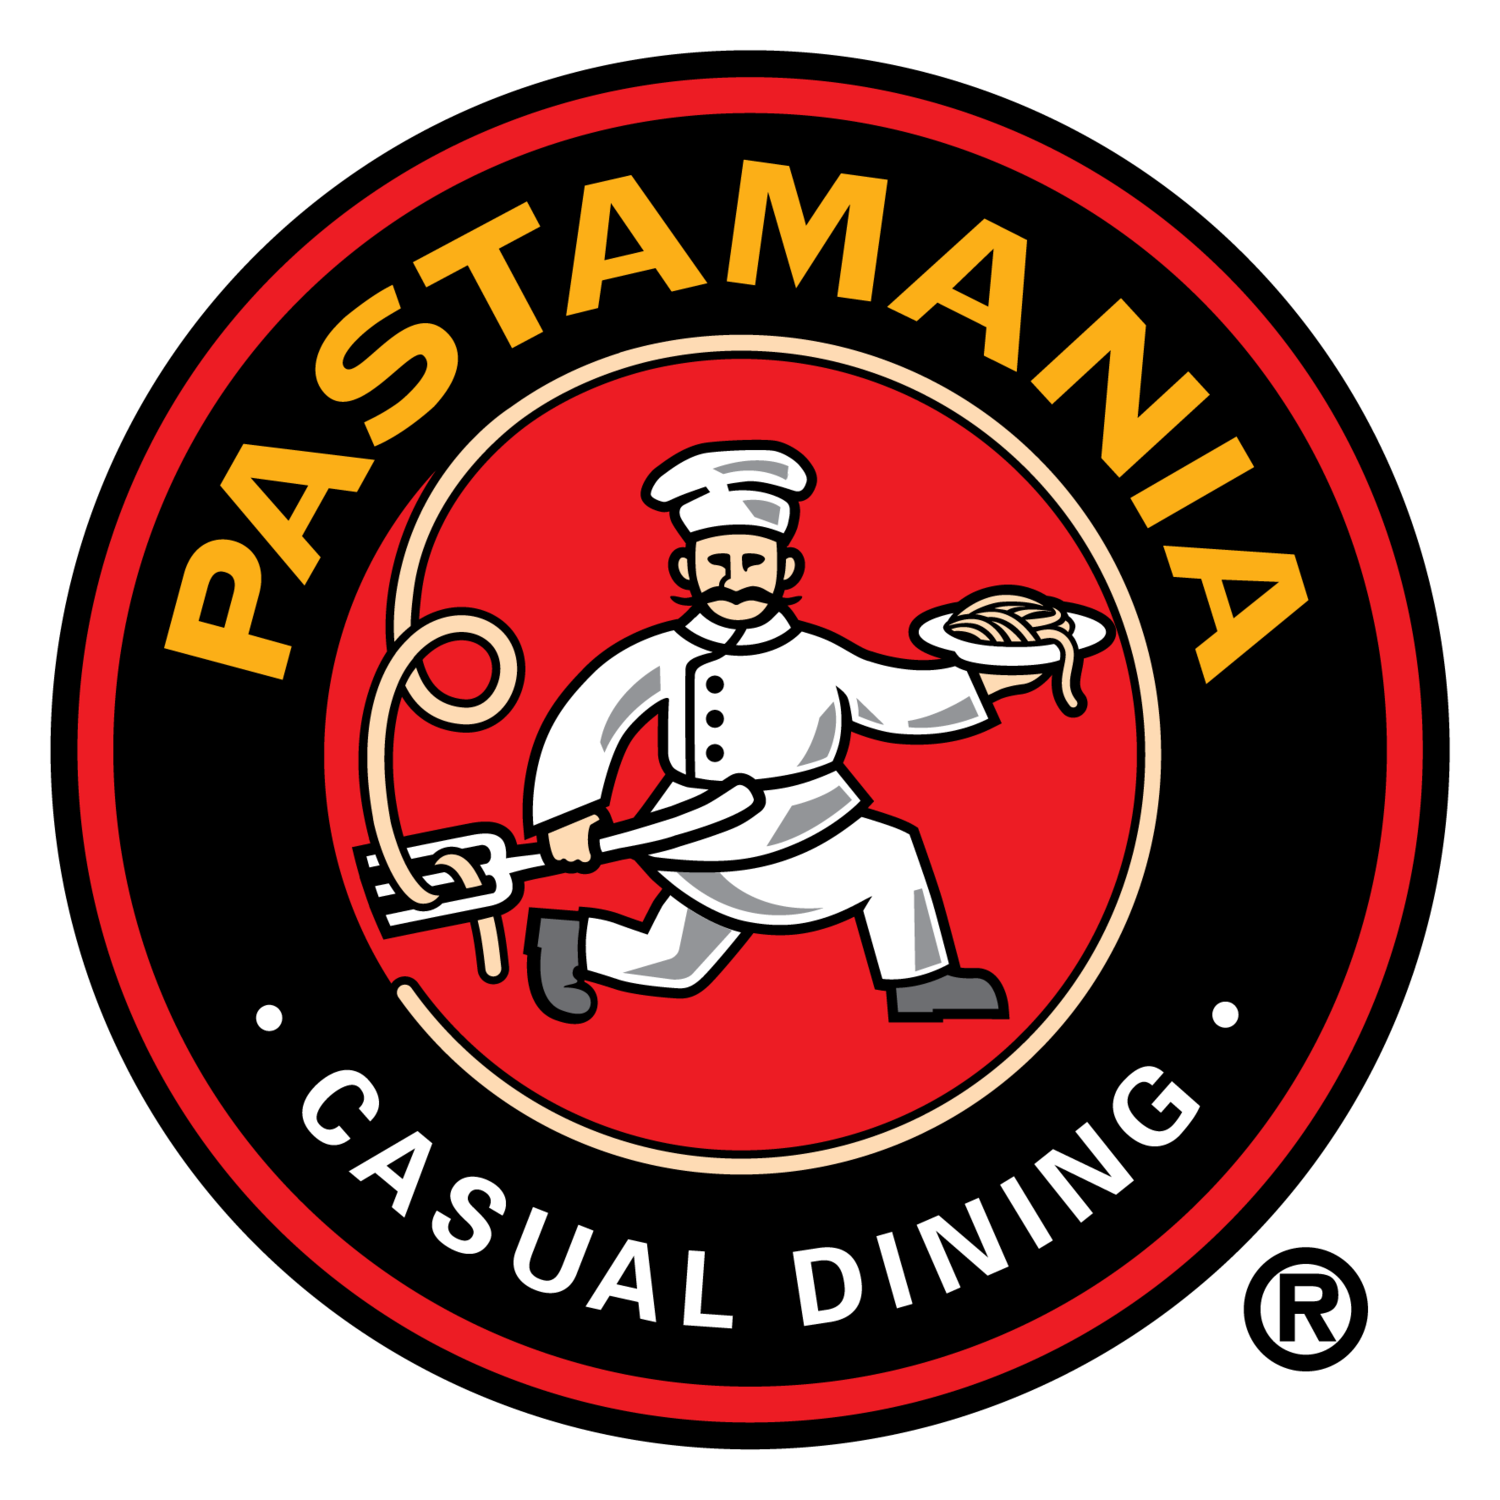 PastaMania